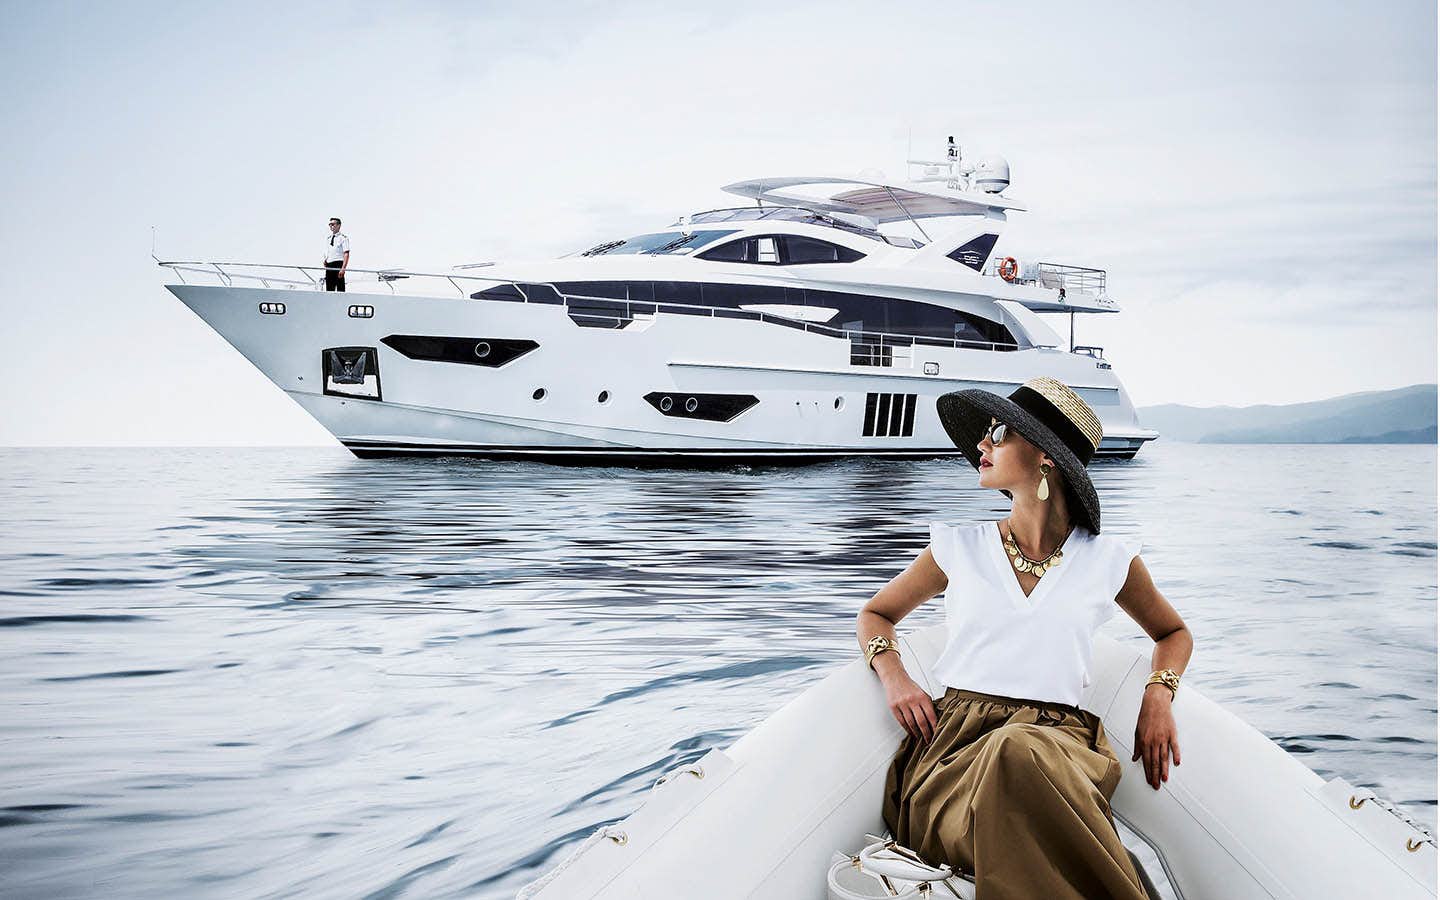 yacht azimut for sale